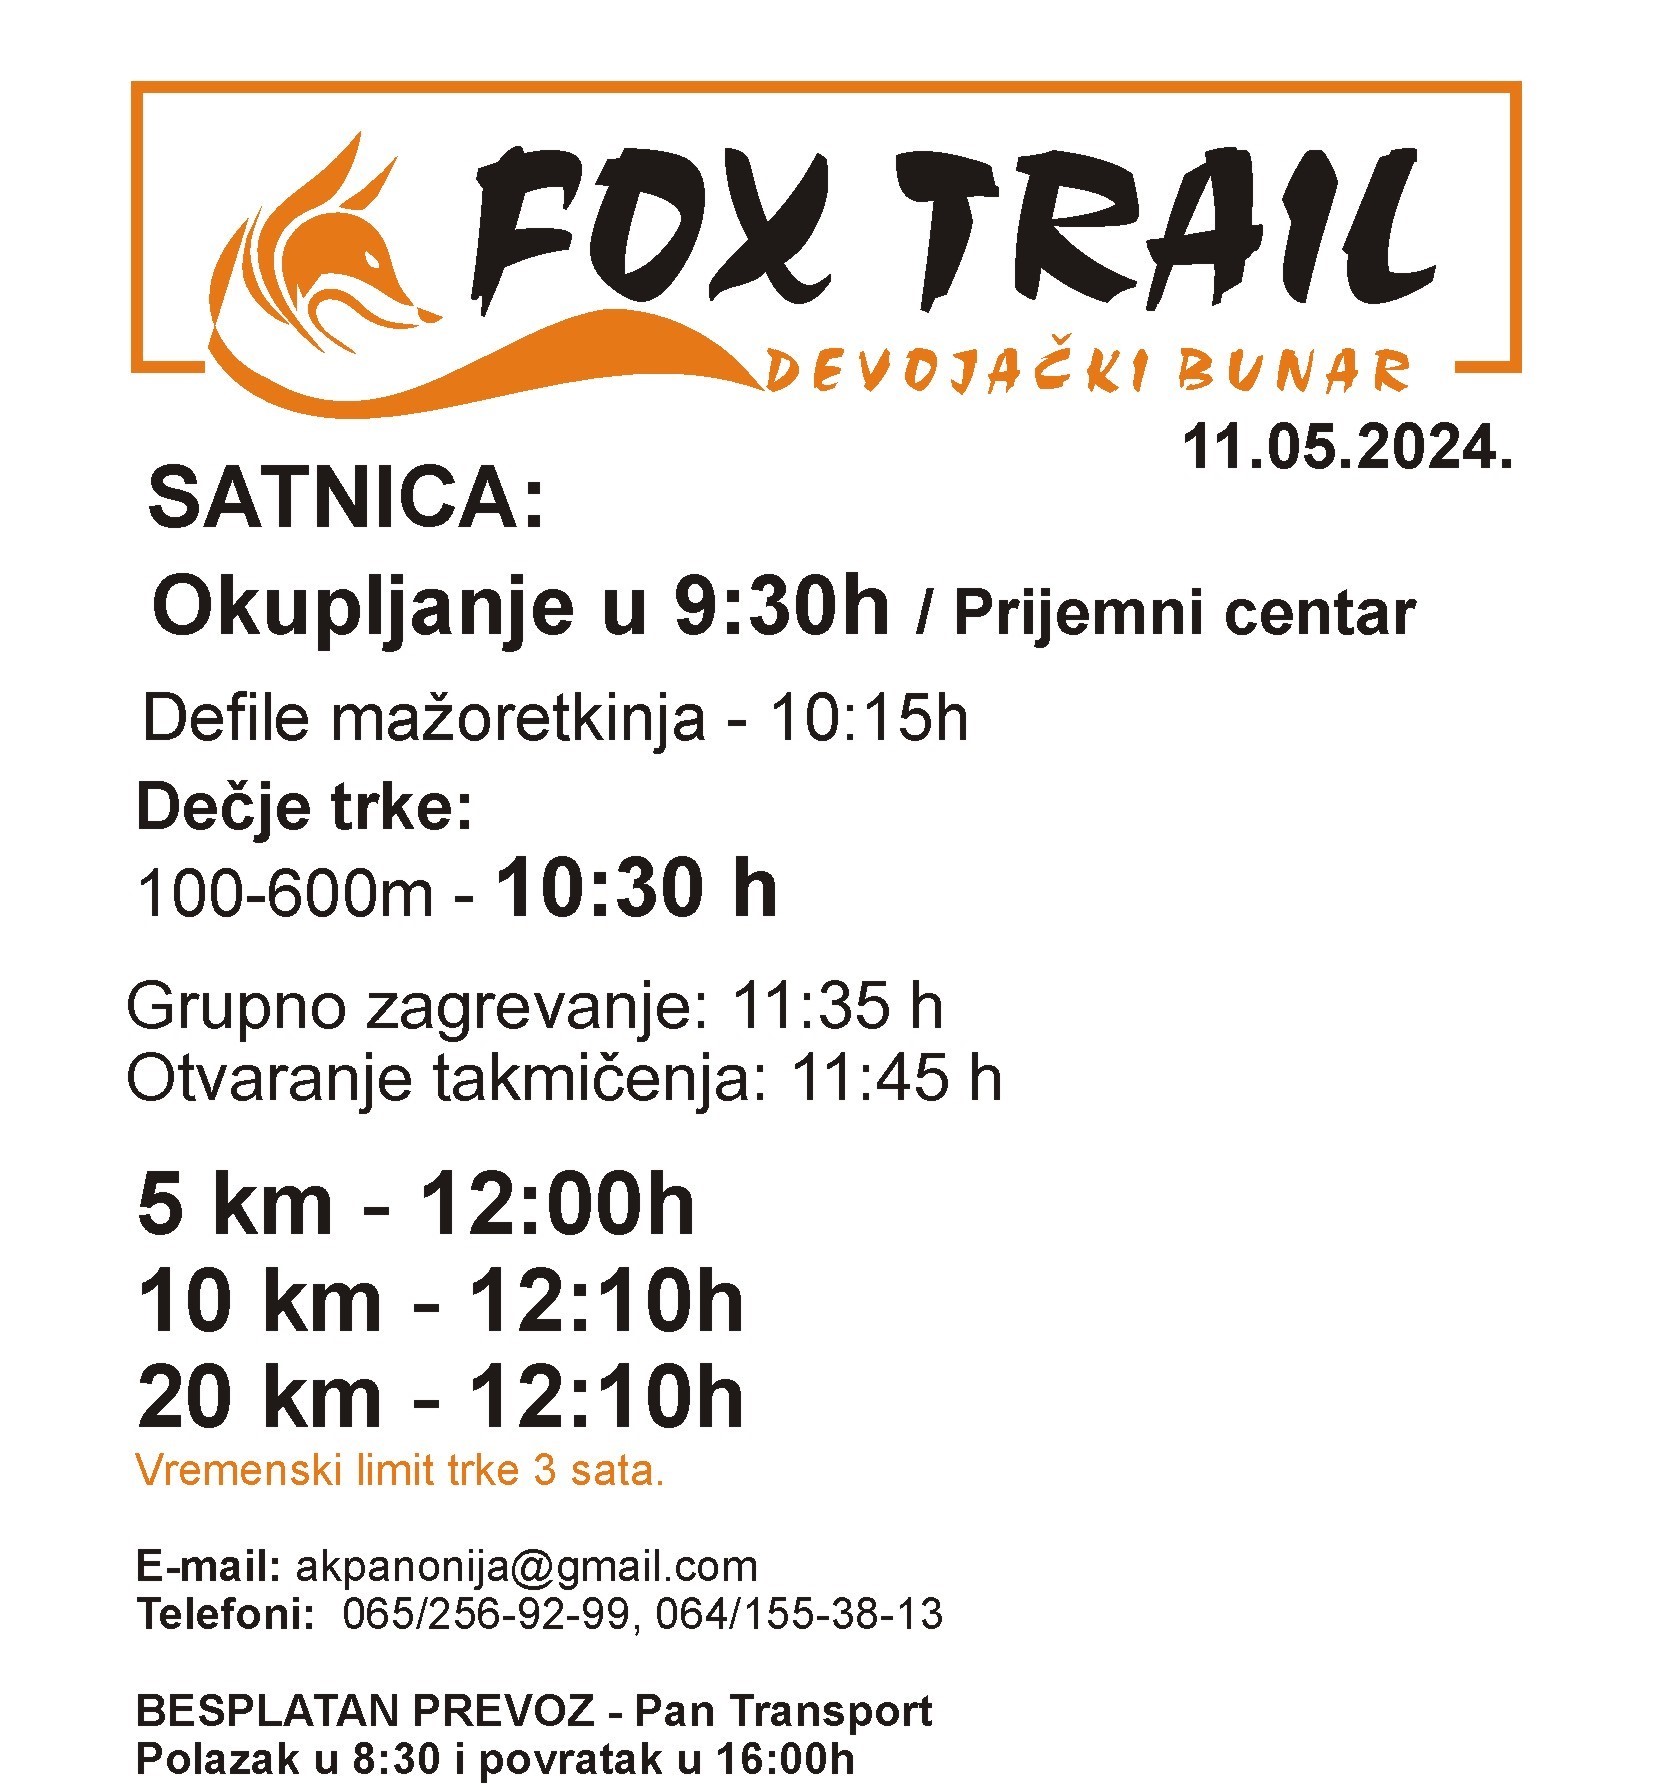 fox trail